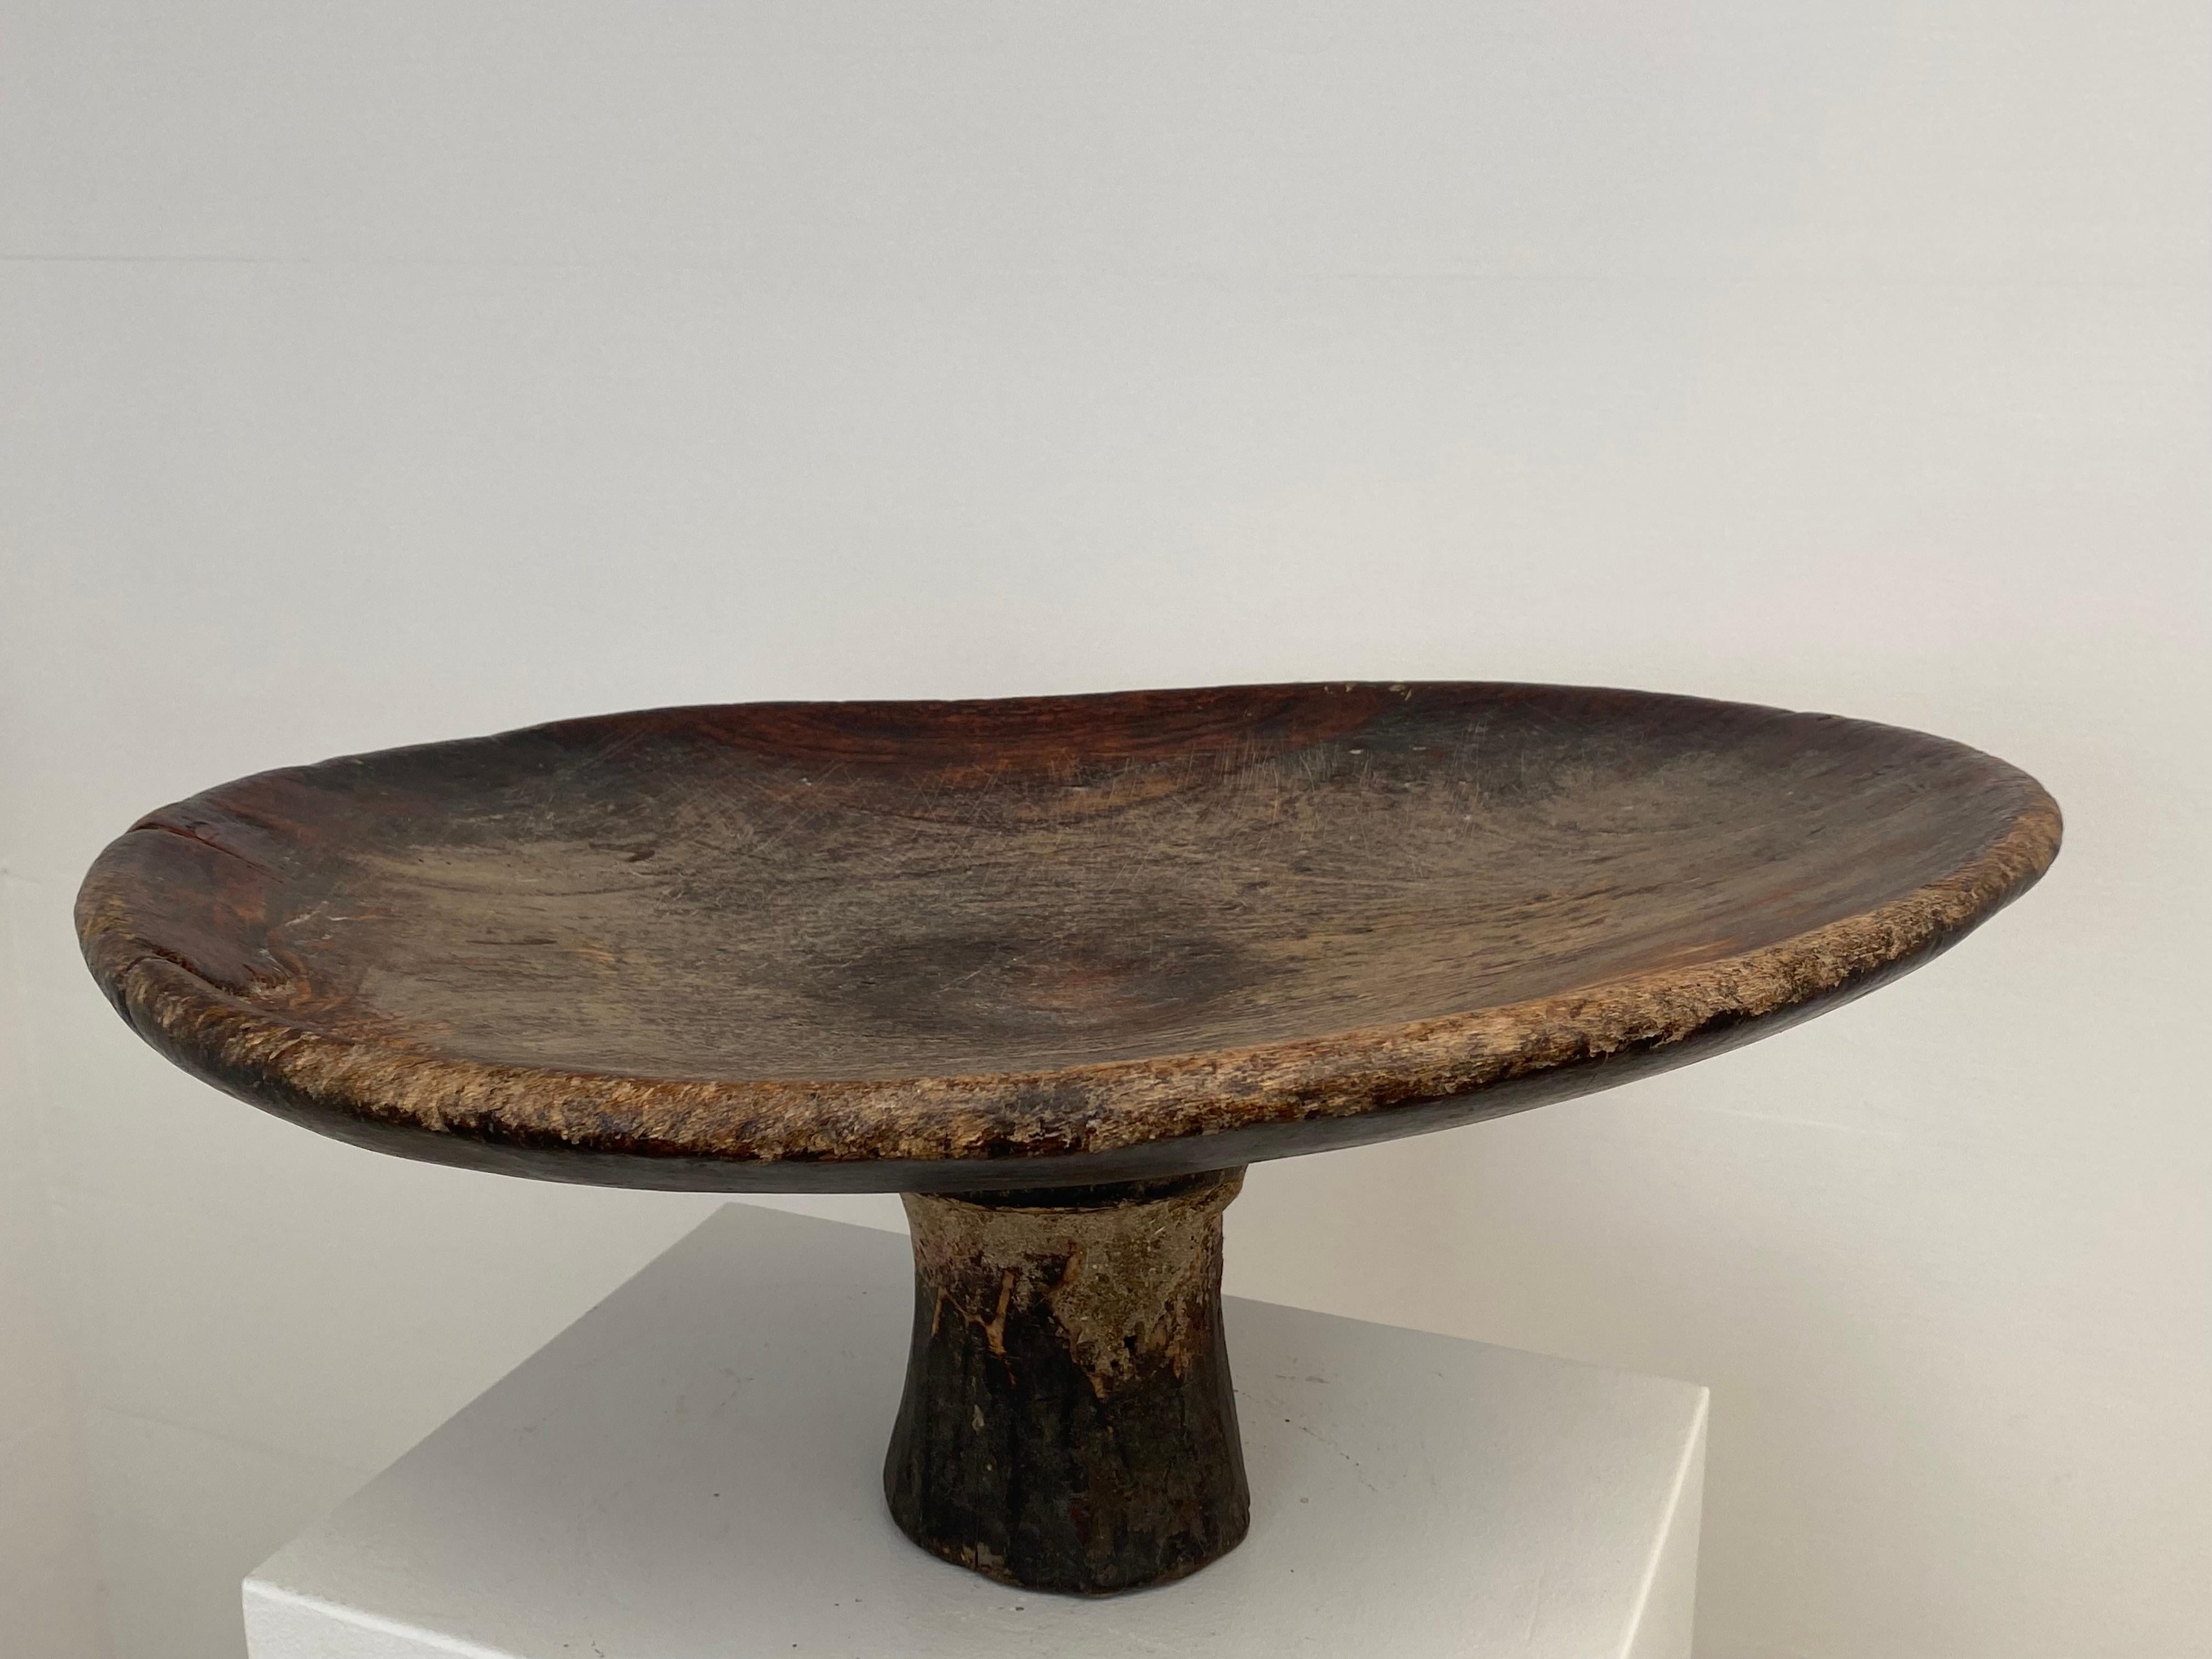 Grande et très décorative Tazza berbère en bois sur pied,
Excellent, éclat antique et patine du bois,
objet très décoratif pouvant être utilisé à différentes fins